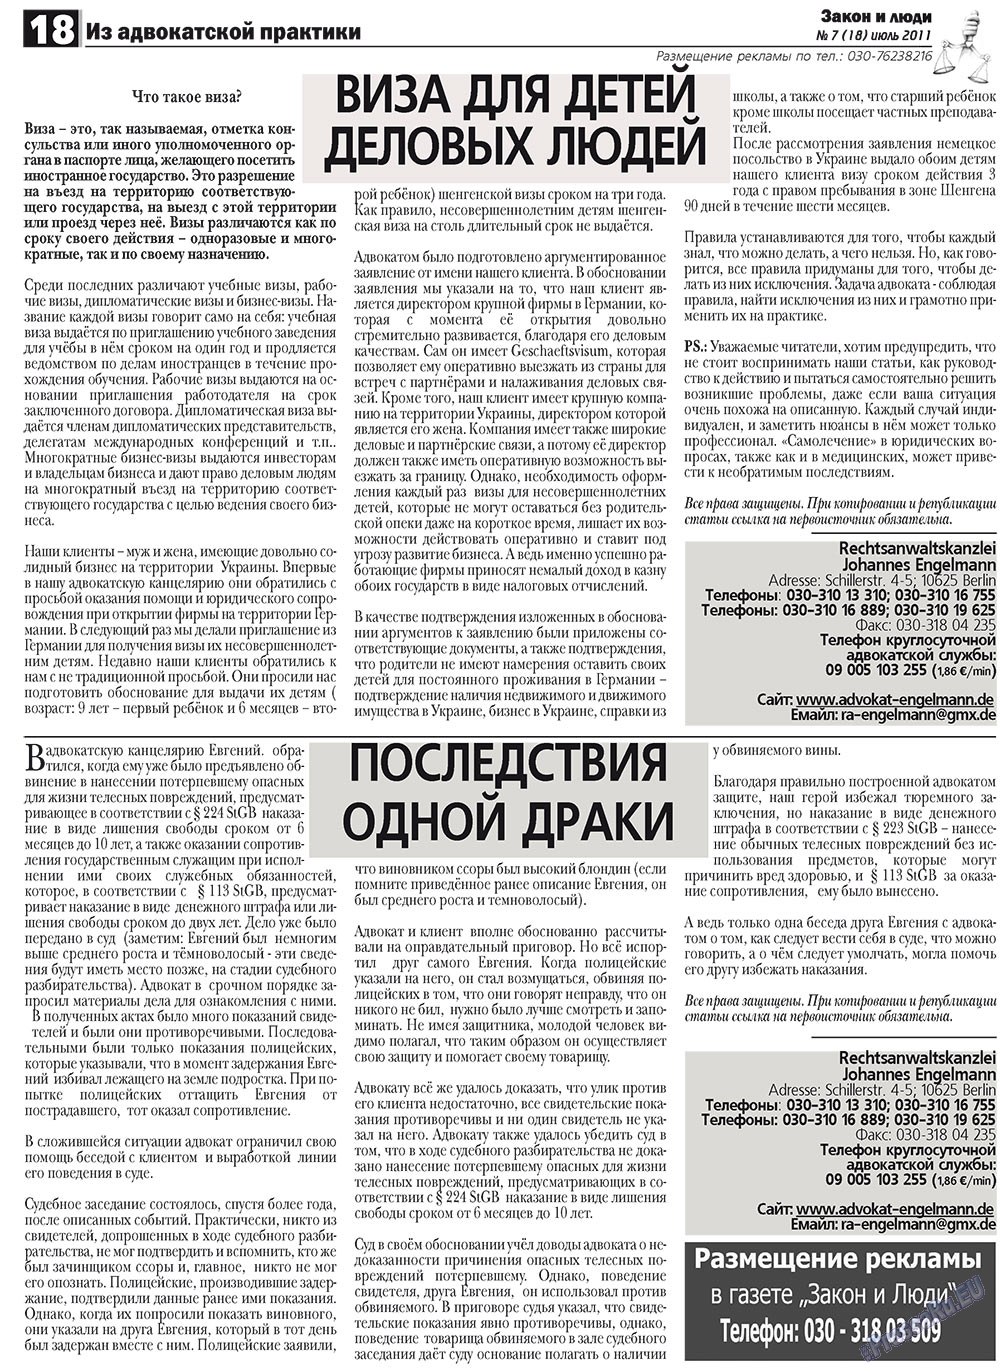 Закон и люди (газета). 2011 год, номер 7, стр. 18